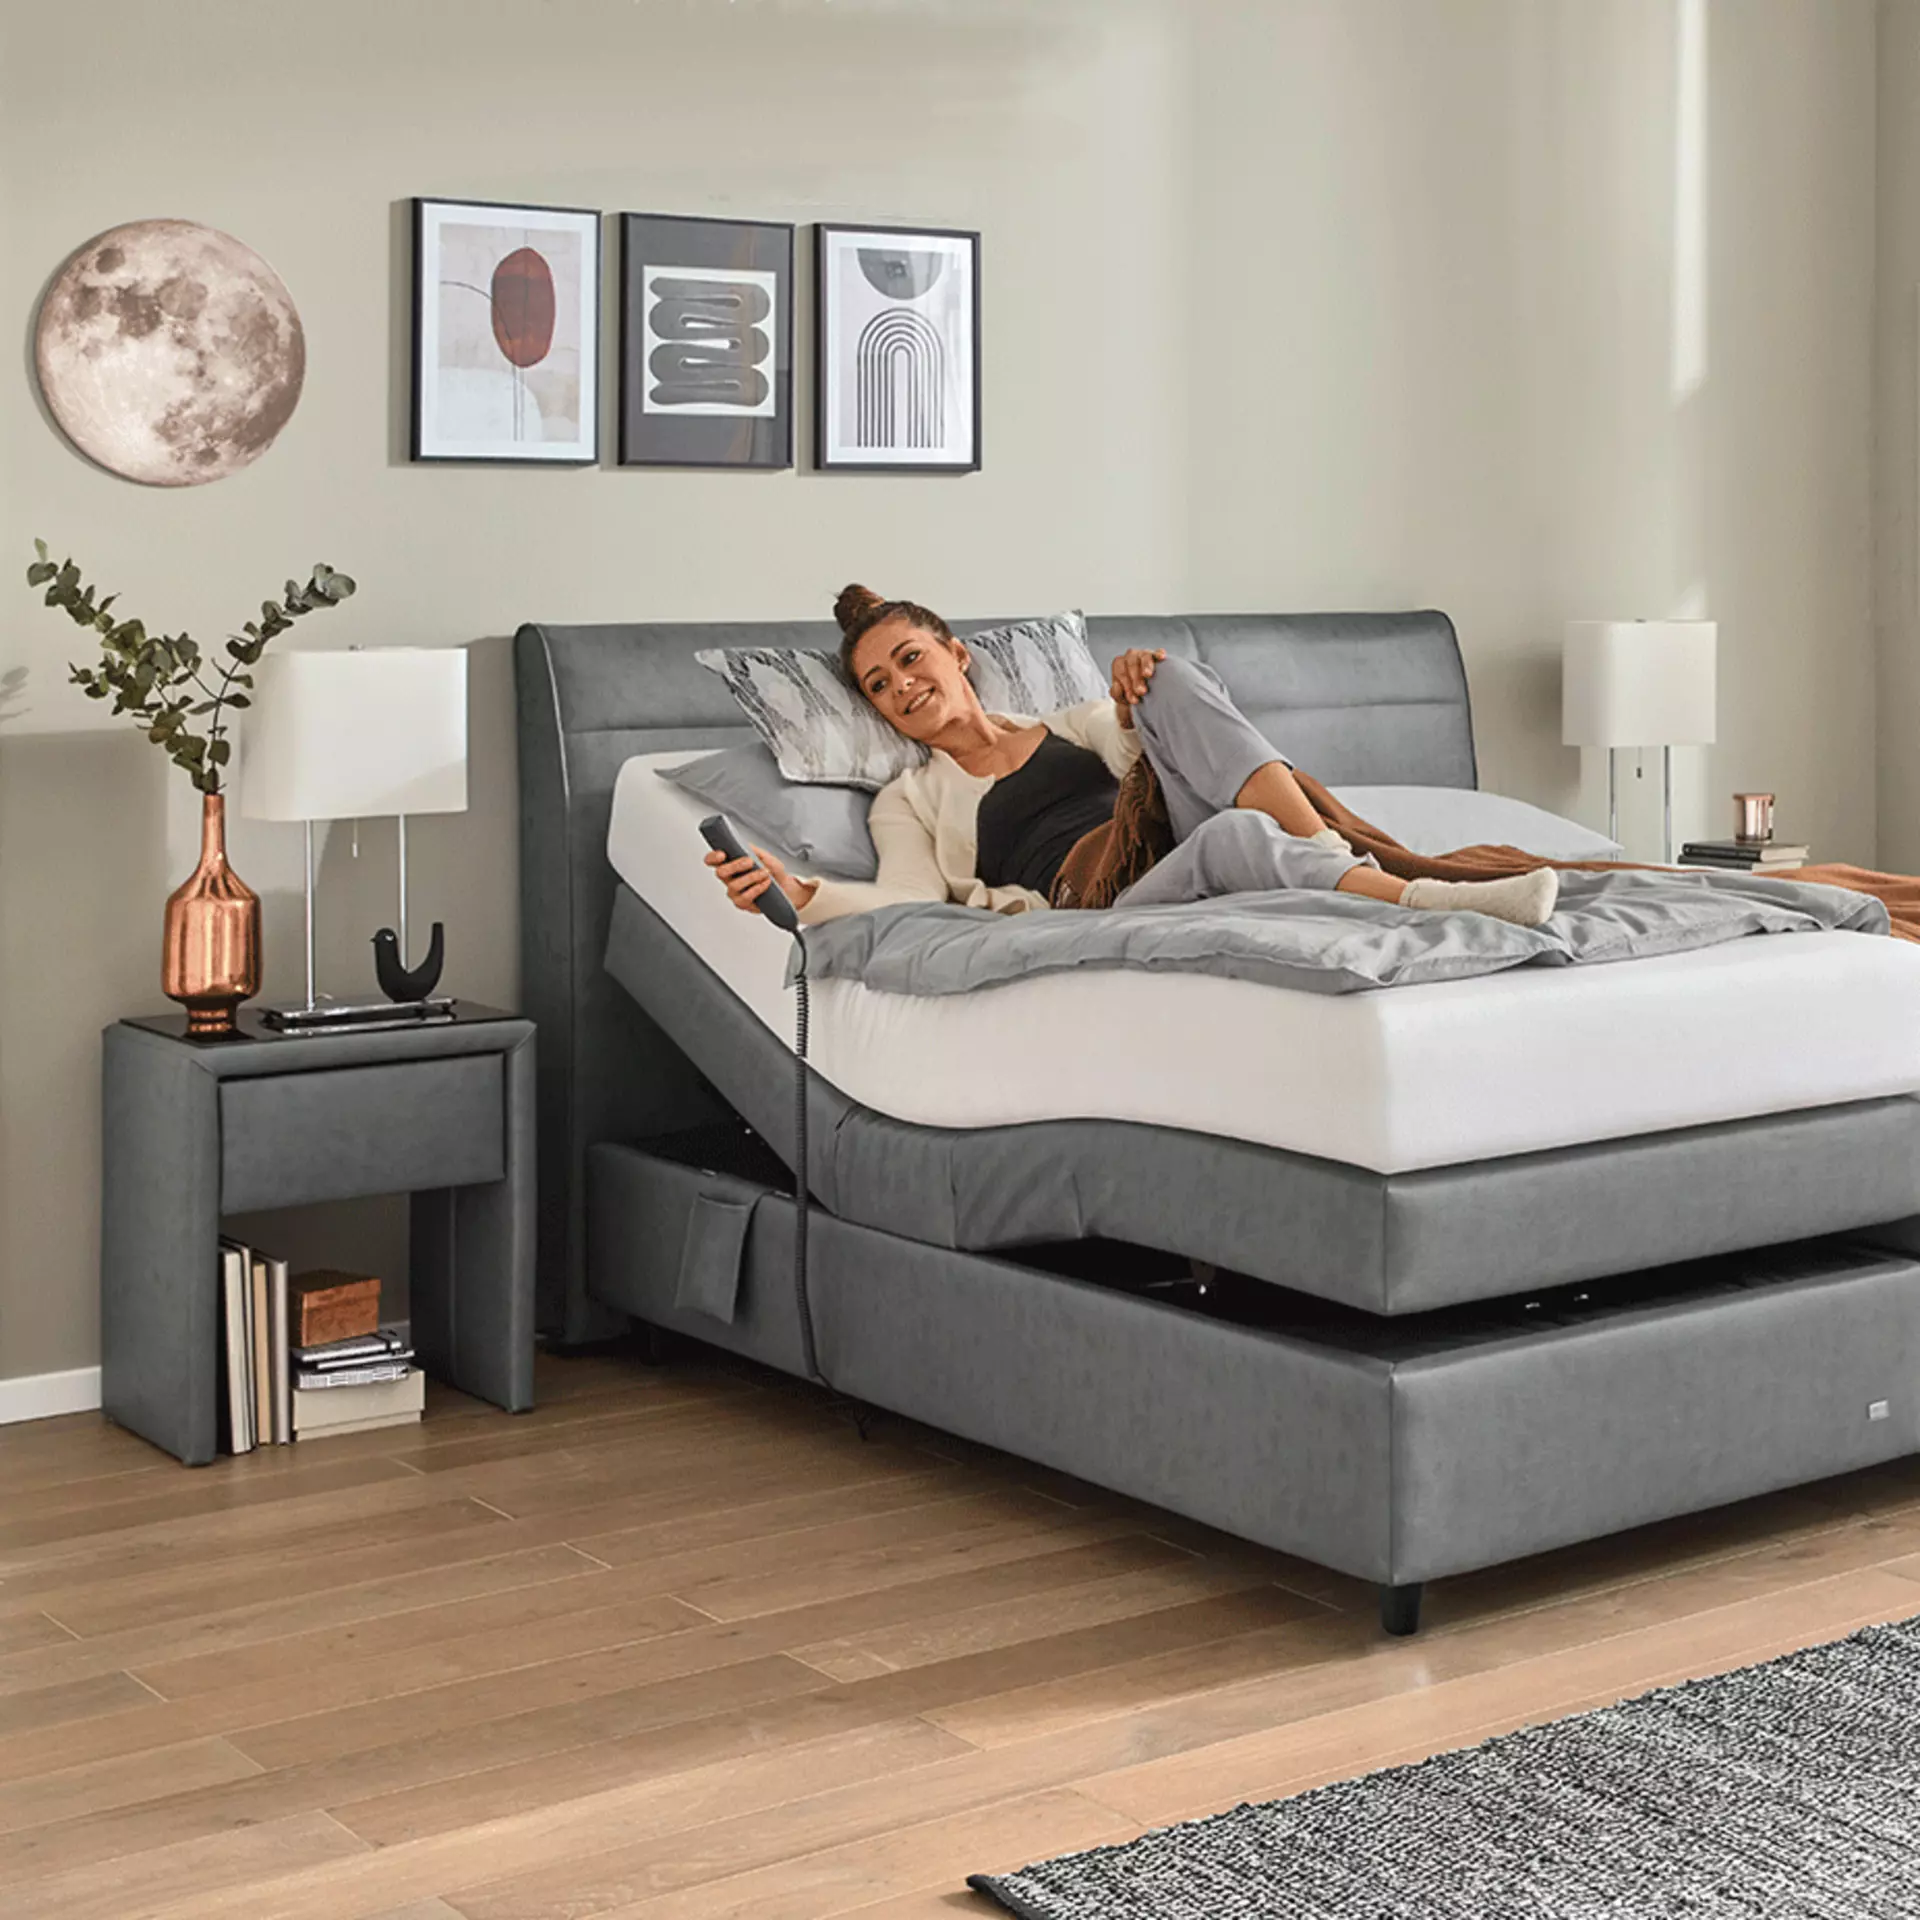 Gesundes Schlafzimmer - Möbel Inhofer Ratgeber mit Tipps und Ideen